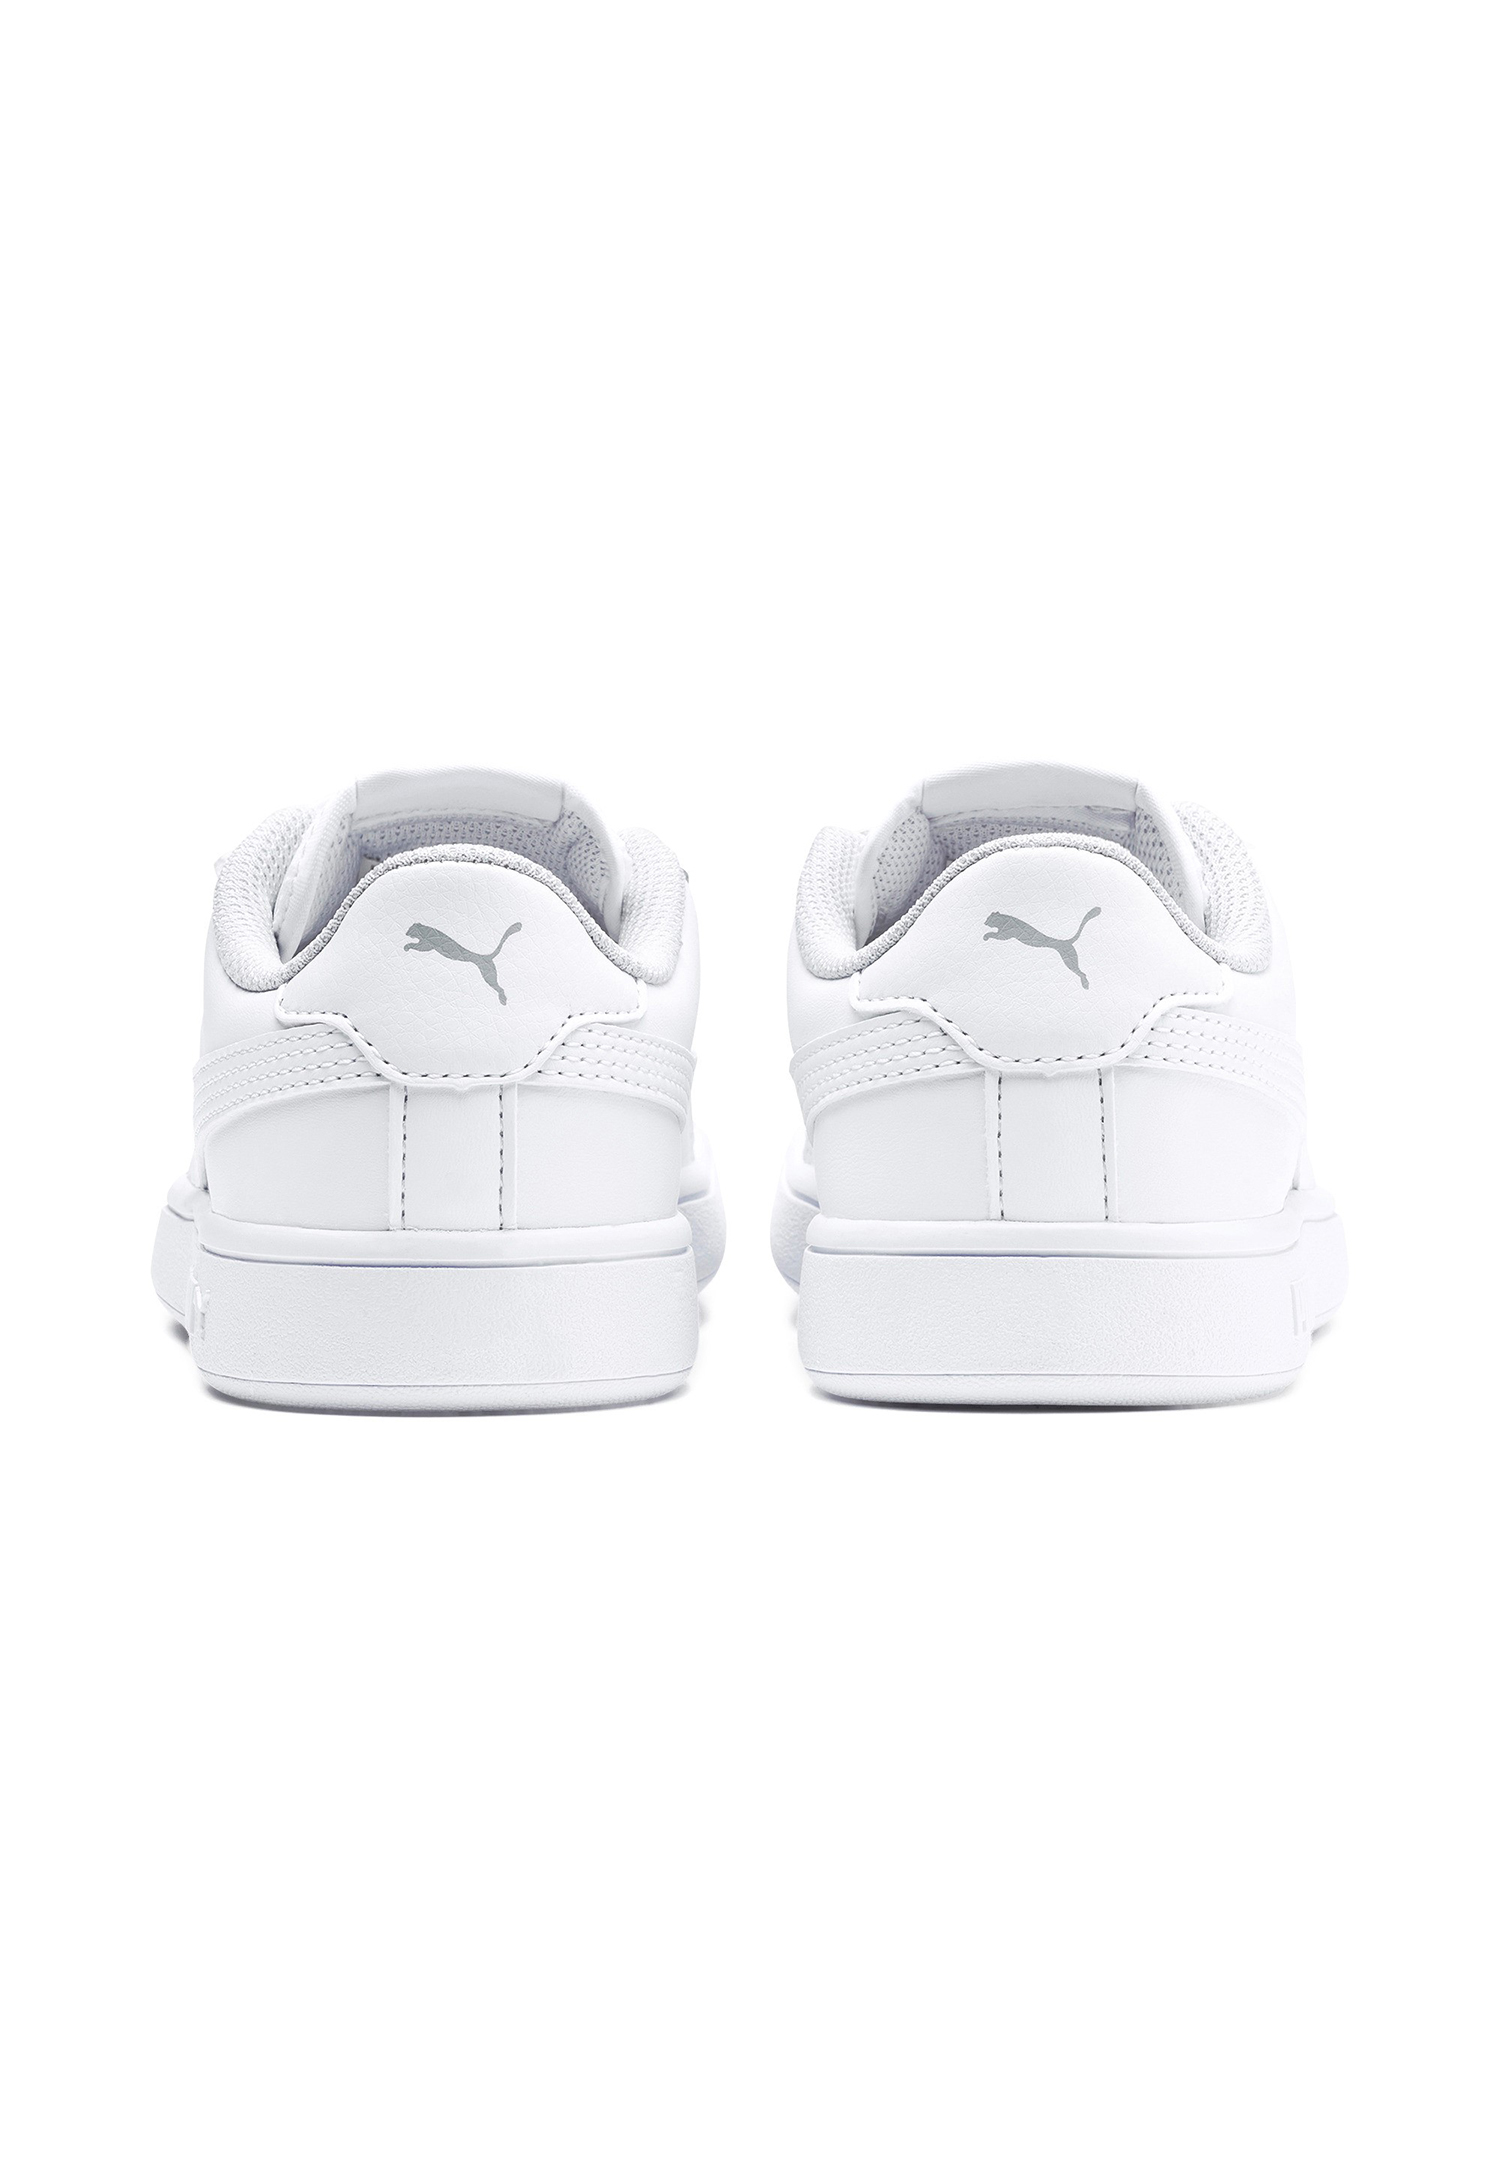 PUMA Smash V2 L V PS Kids Sneaker Schuhe weiss 365173 02